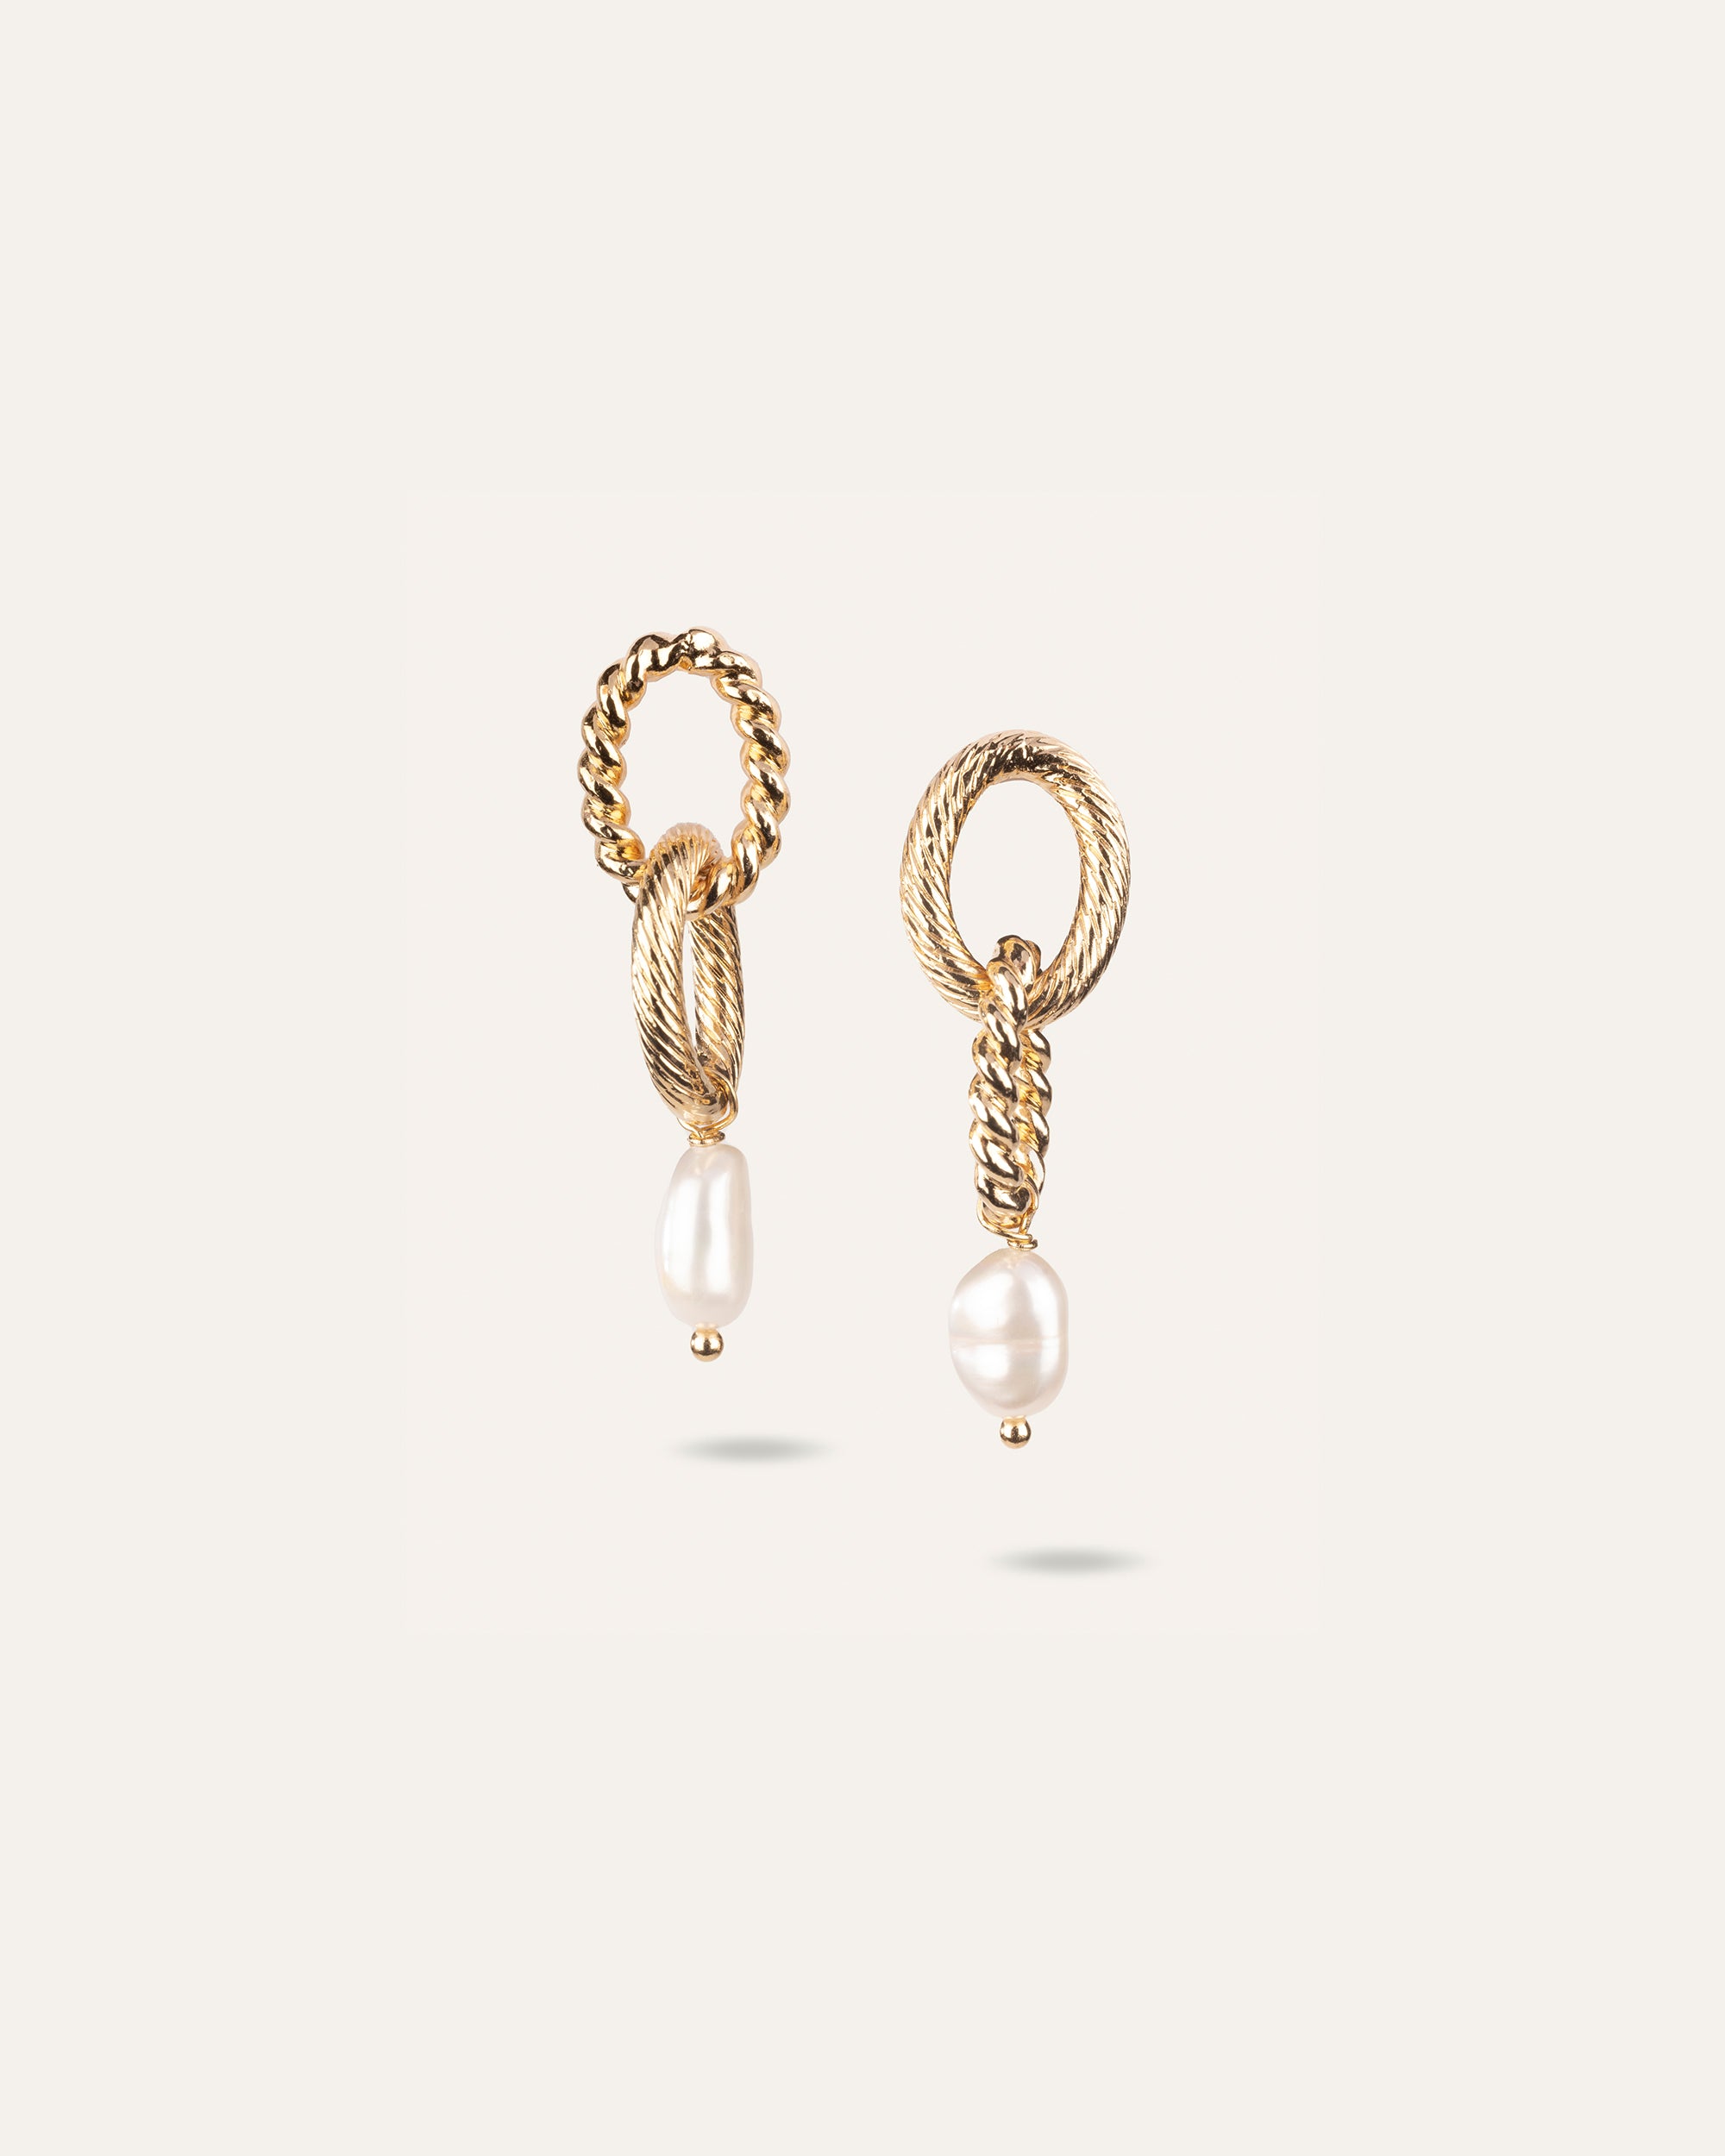 Boucles d'oreilles asymétriques composées d'une perle de culture ovale en plaqué or 3 microns et made in France.